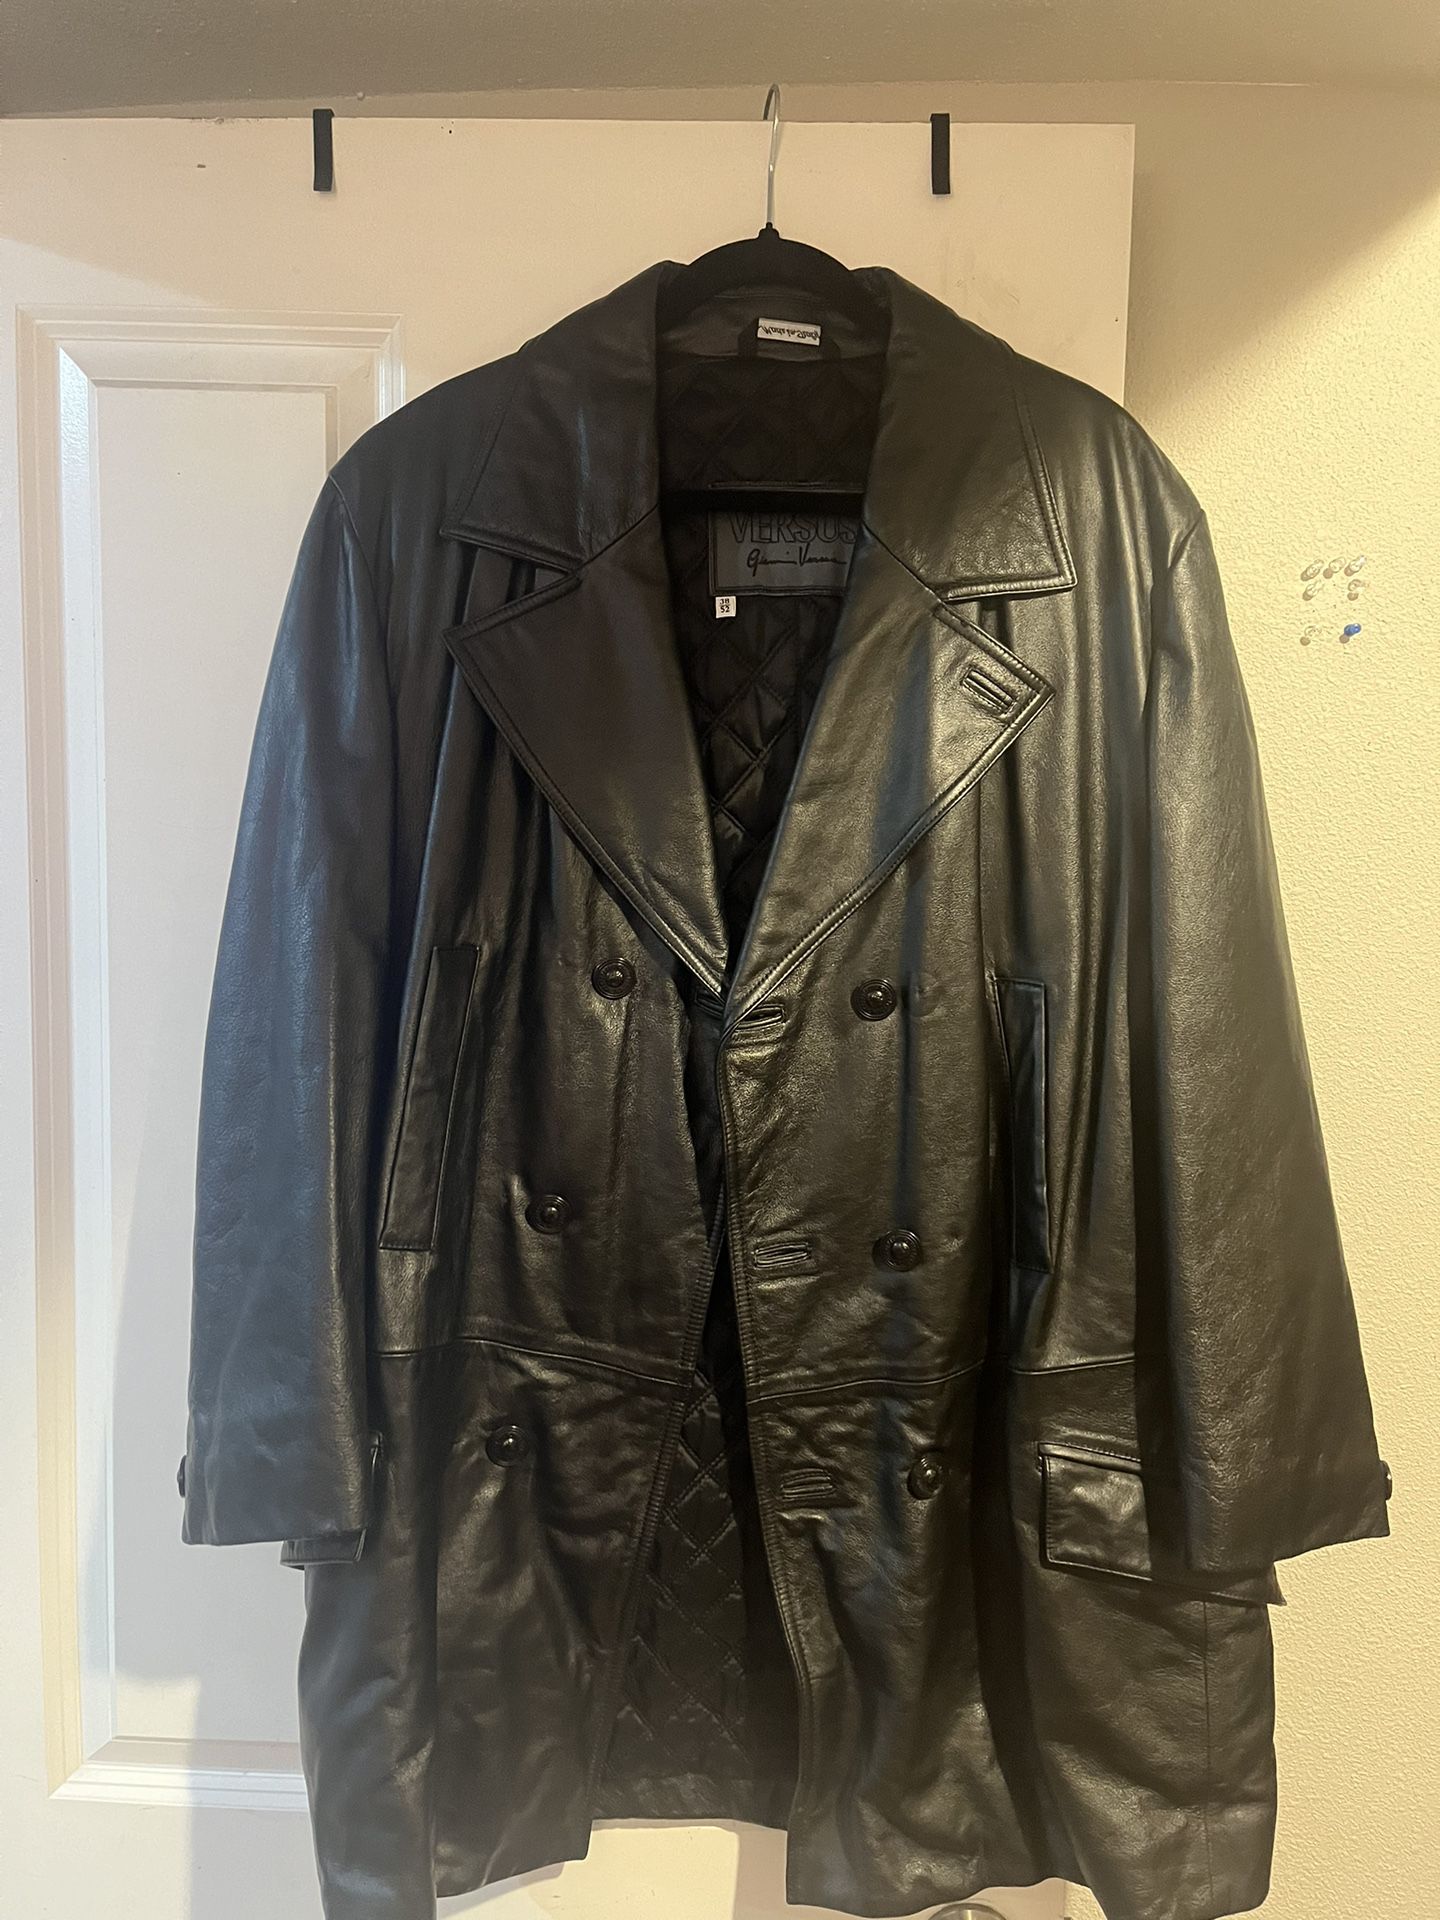 Versus Gianni Versace Men’s Leather Jacket